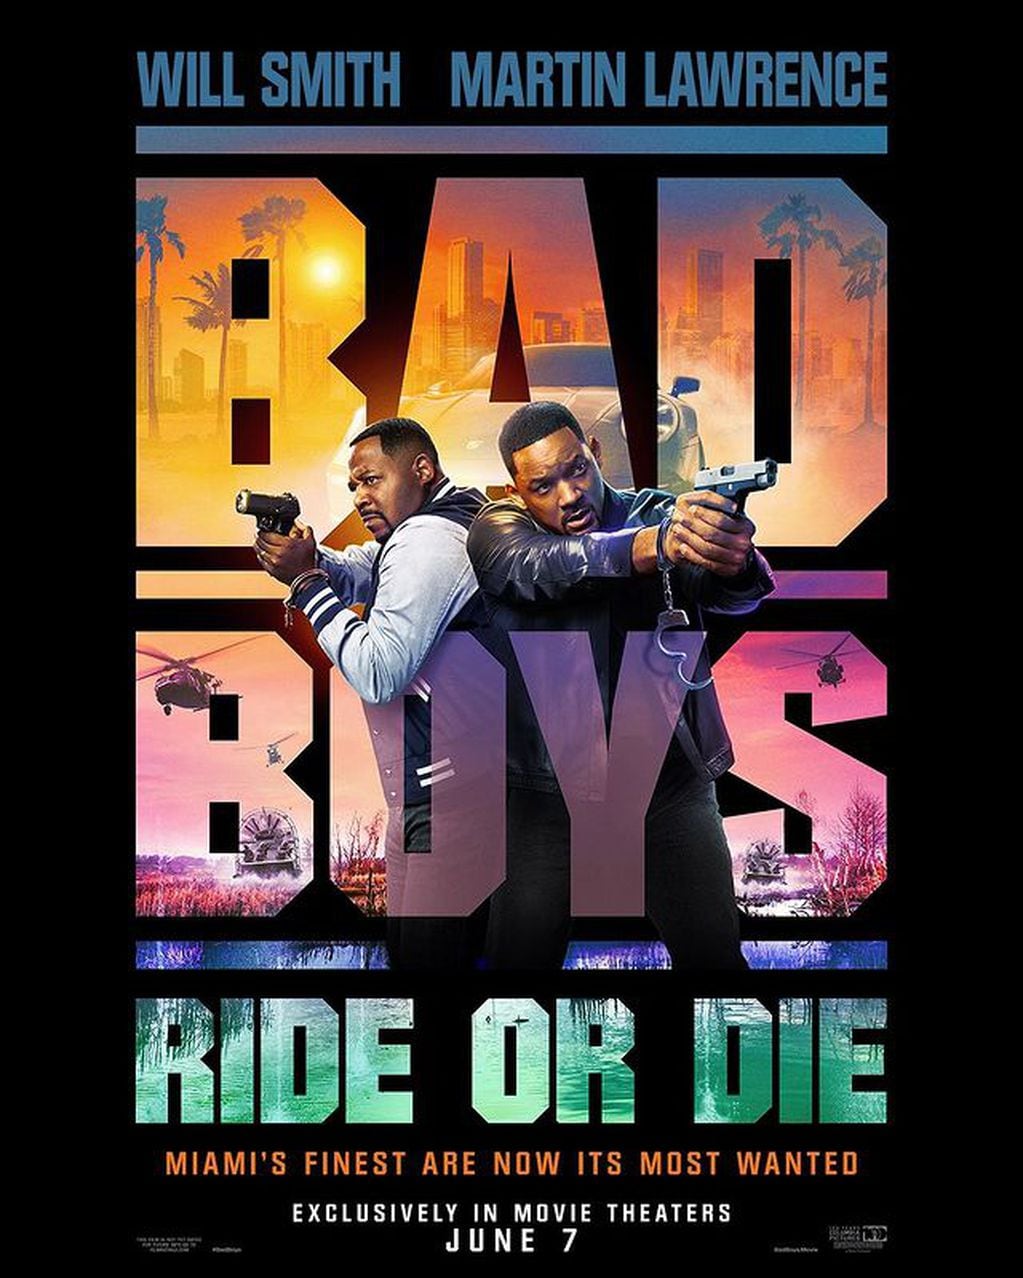 Trueno formó parte del soundtrack de Bad Boys 4: Ride or Die